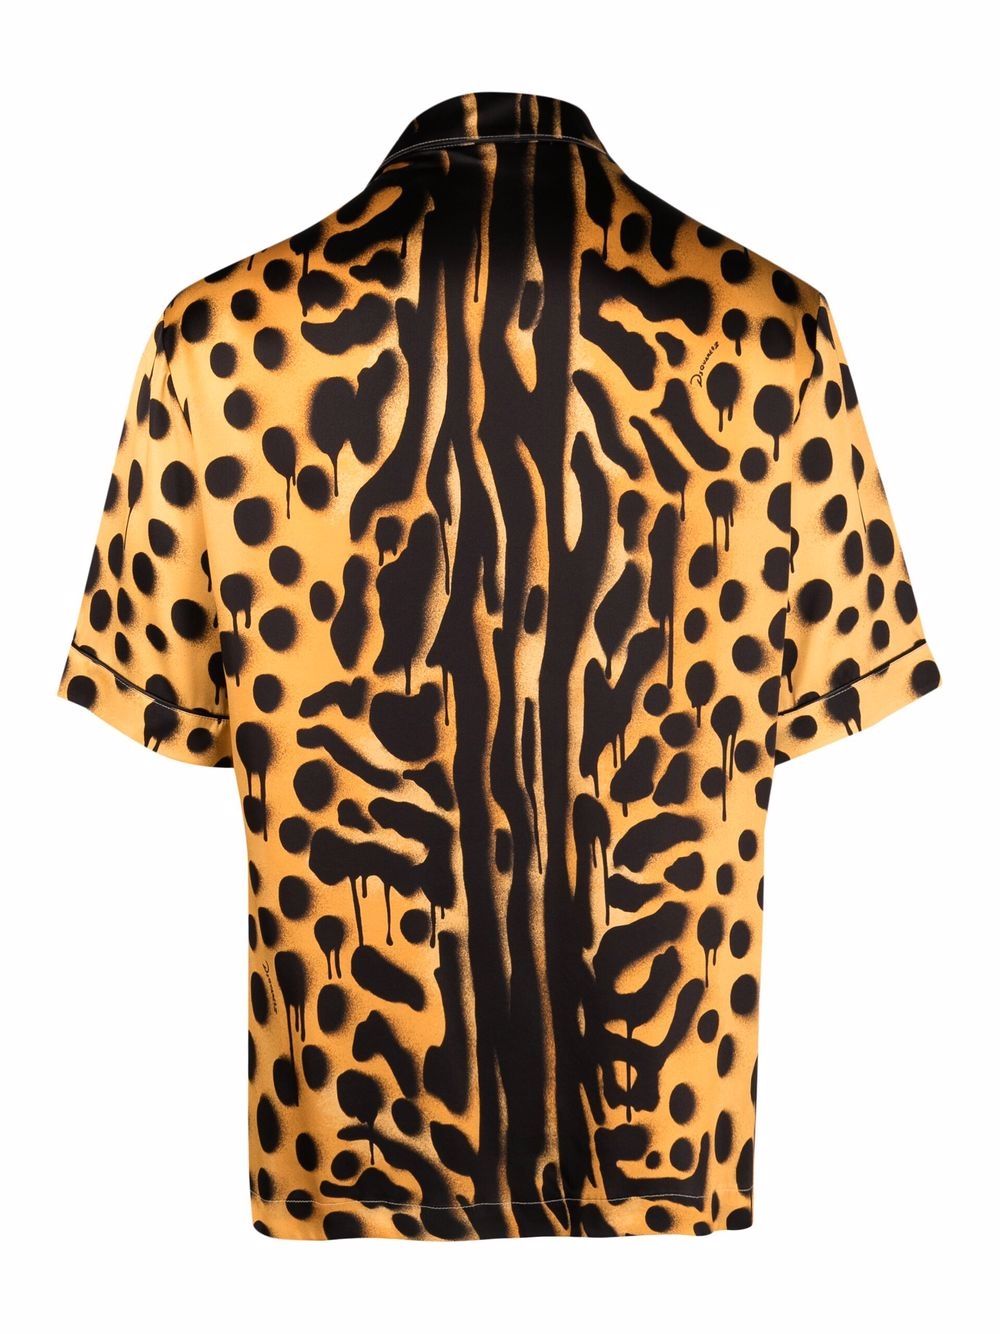 фото Dsquared2 пижамная рубашка с леопардовым принтом